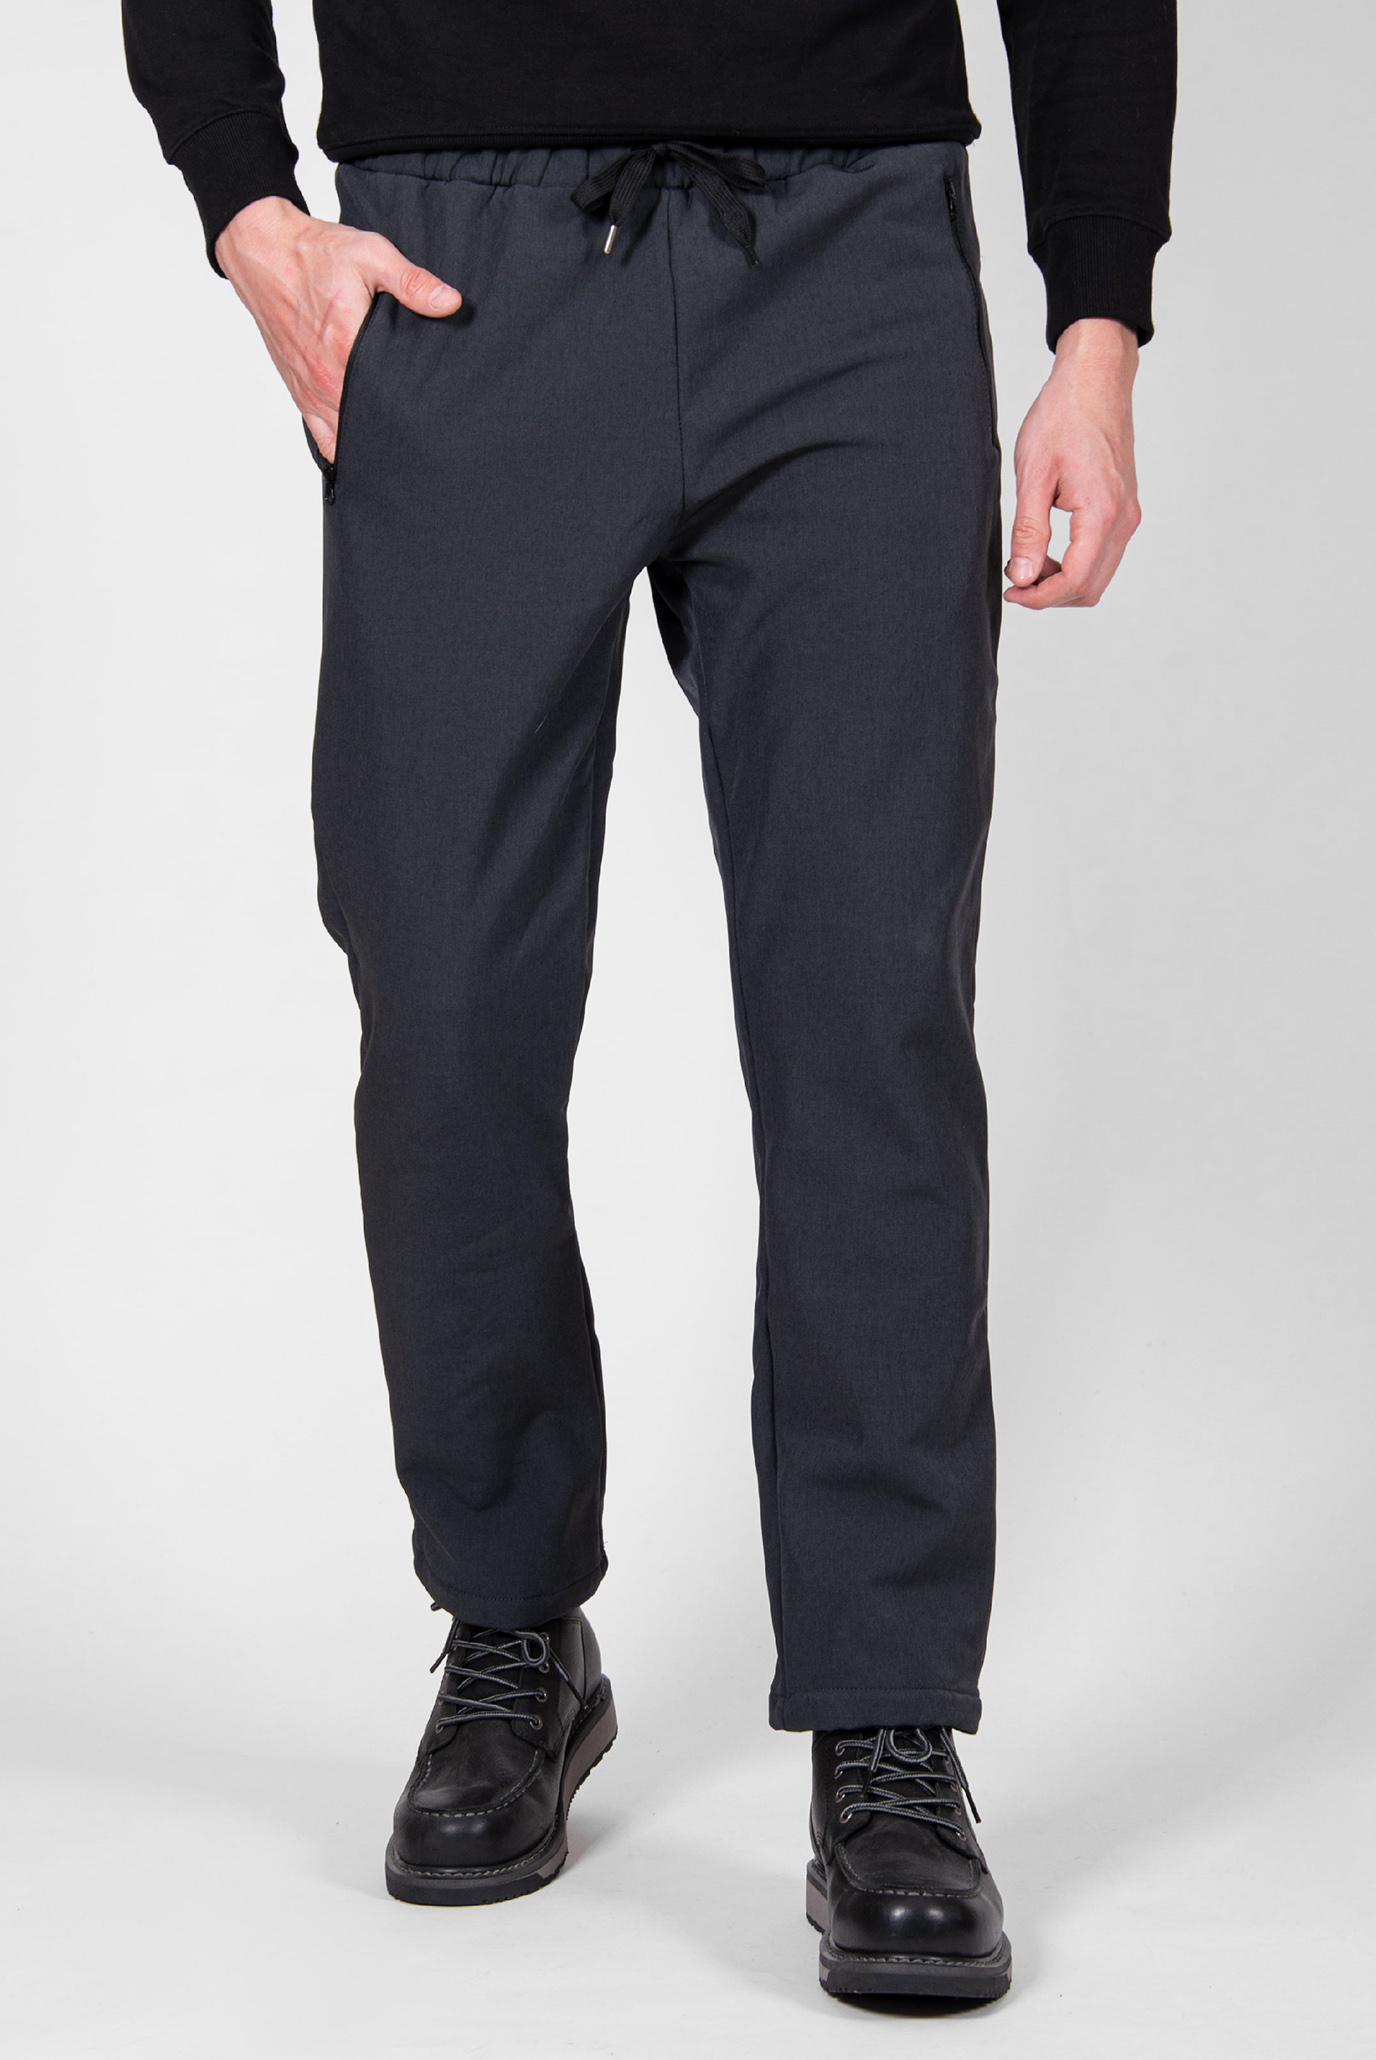 Чоловічі темно-сірі спортивні штани Torox 1